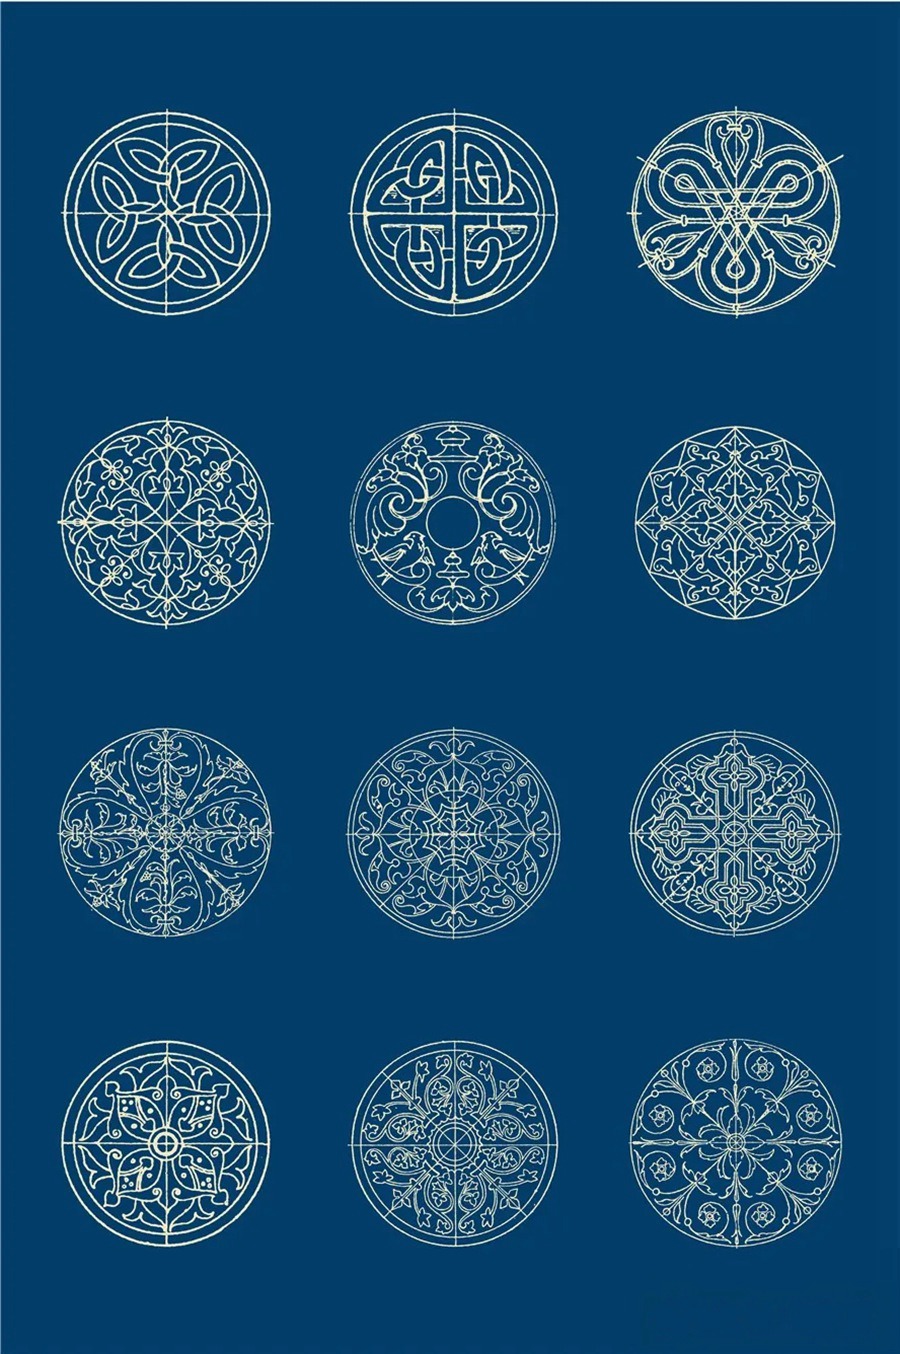 中国风传统古典青花瓷图案花纹图形纹样AI矢量模板花纹设计素材 图片素材 第16张